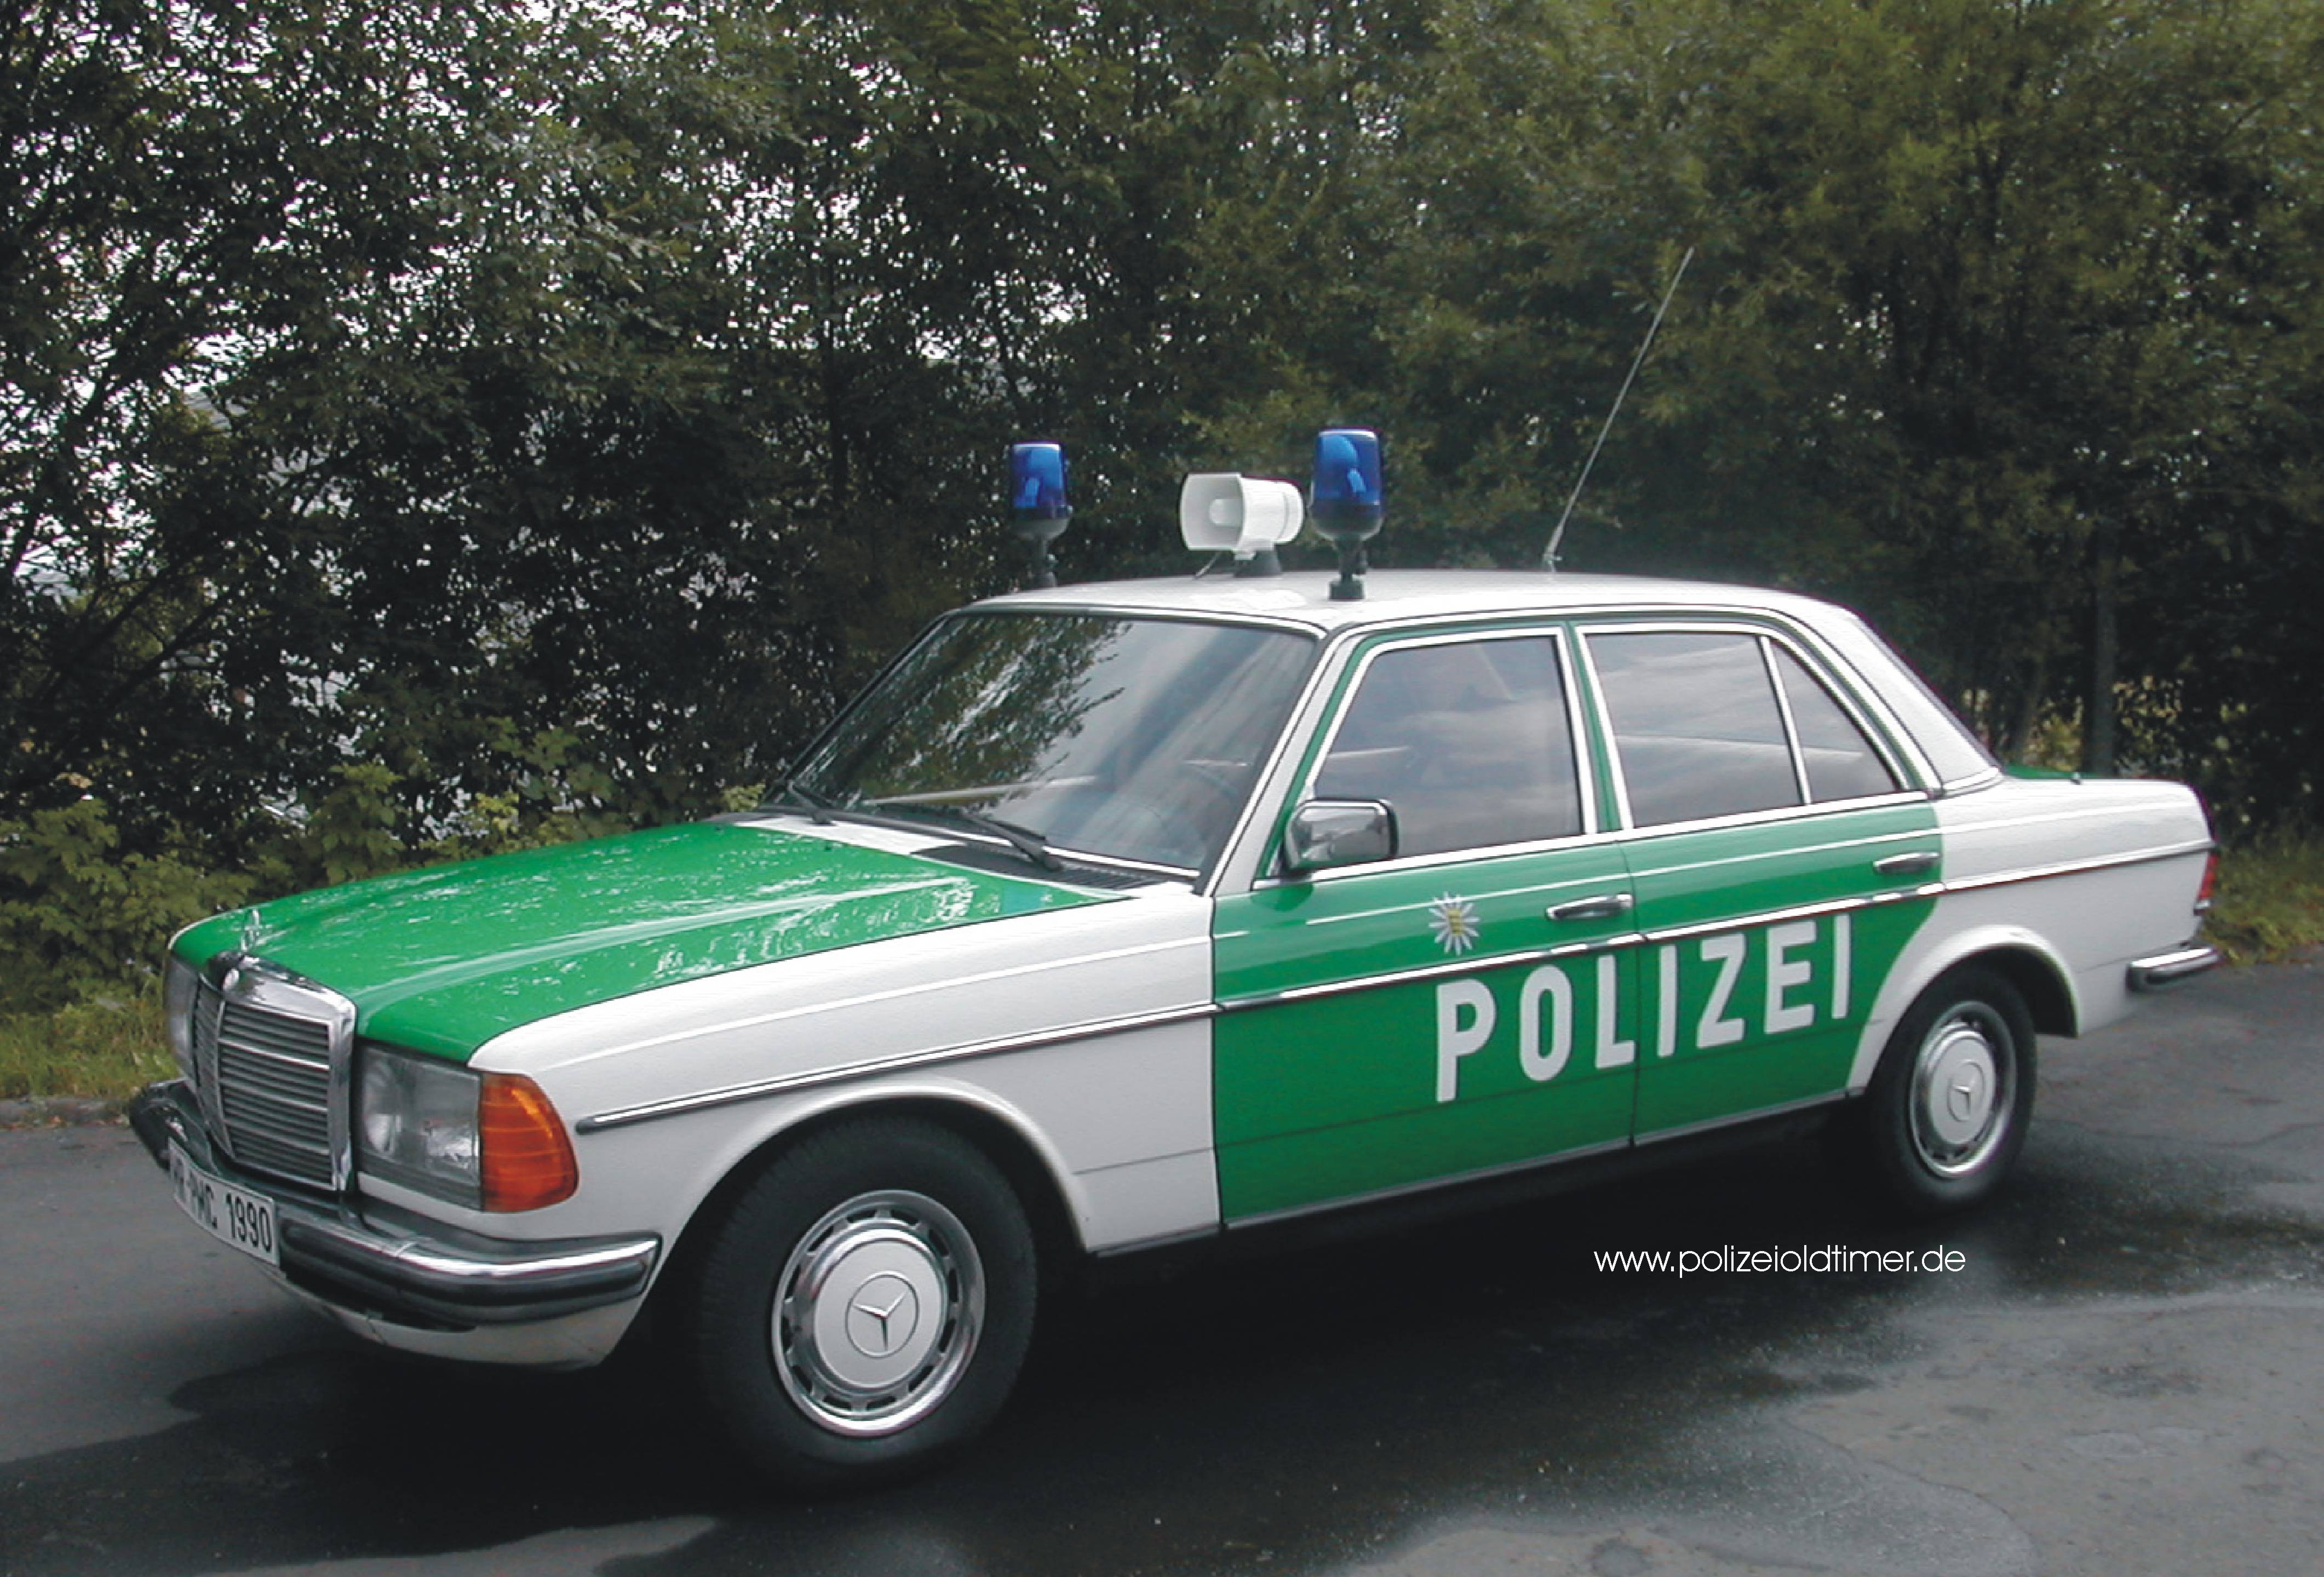 Mercedes-Benz 280 E der Polizei aus dem Polizeioldtimer Museum in Marburg